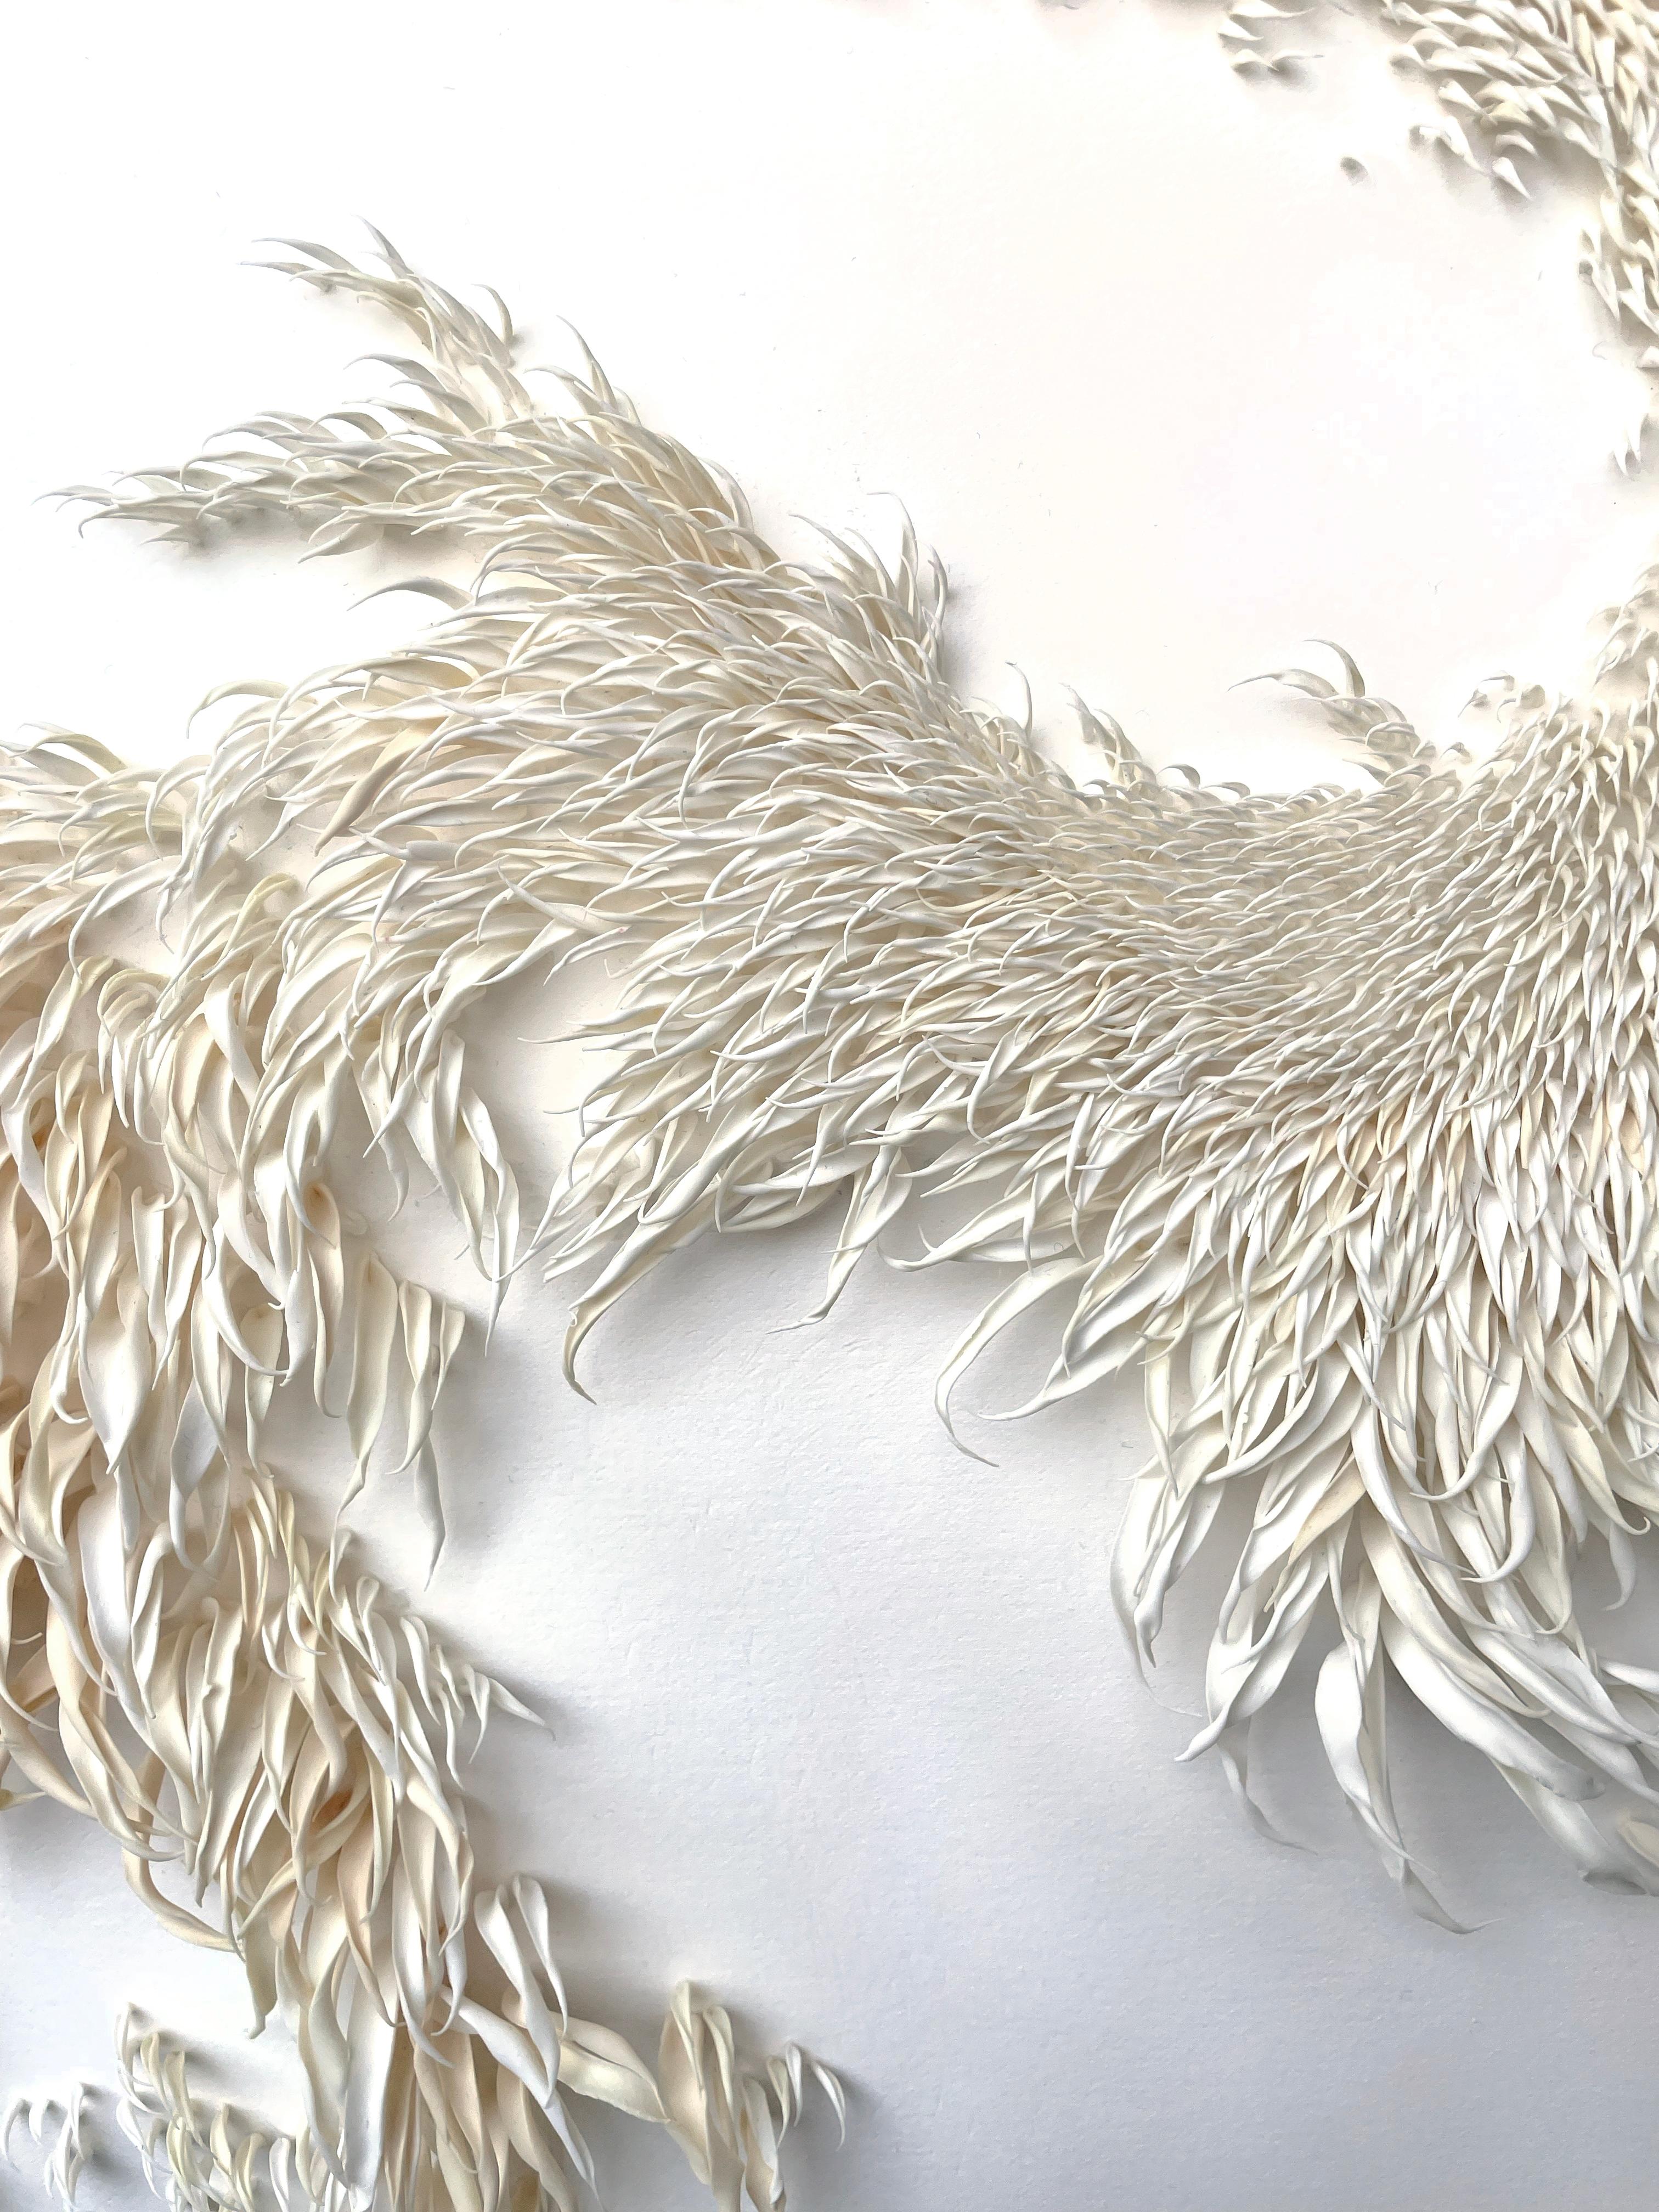 Die neuen Werke von Mylinh Nguyen aus Polymerharz entführen uns in eine Natur, deren Raffinesse Bewunderung hervorruft. Ausgehend von der Physiognomie lebender oder ausgestorbener Pflanzenarten schafft die Künstlerin faszinierende Werke, in denen